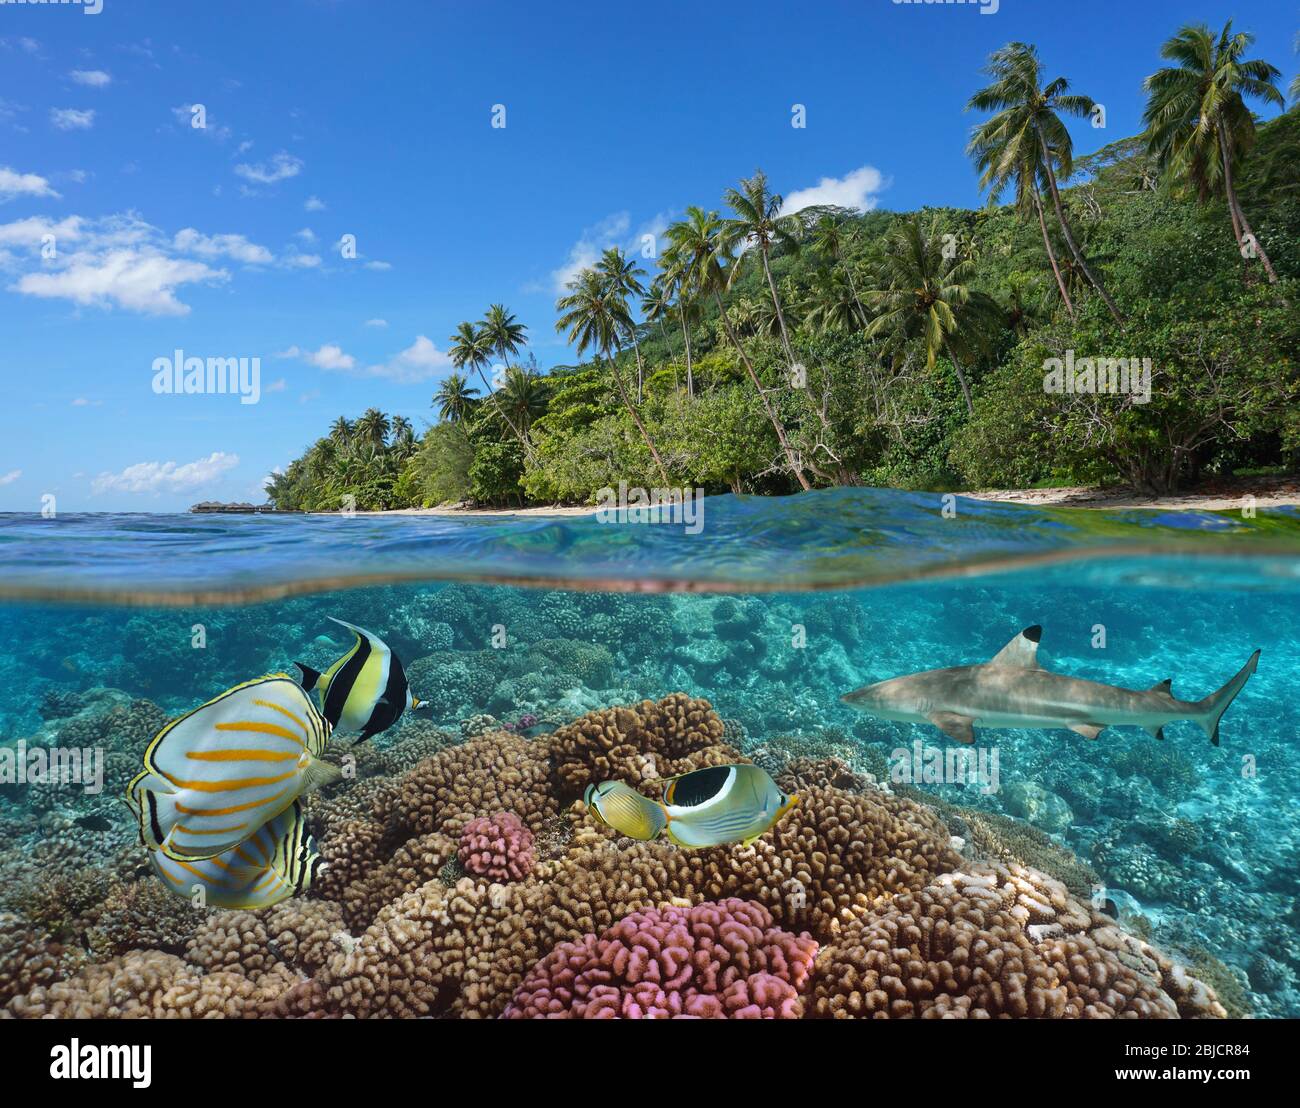 Polinesia Francese, barriera corallina con pesci colorati sottomarini e costa tropicale con vegetazione verde, vista su sotto l'acqua, oceano Pacifico Foto Stock